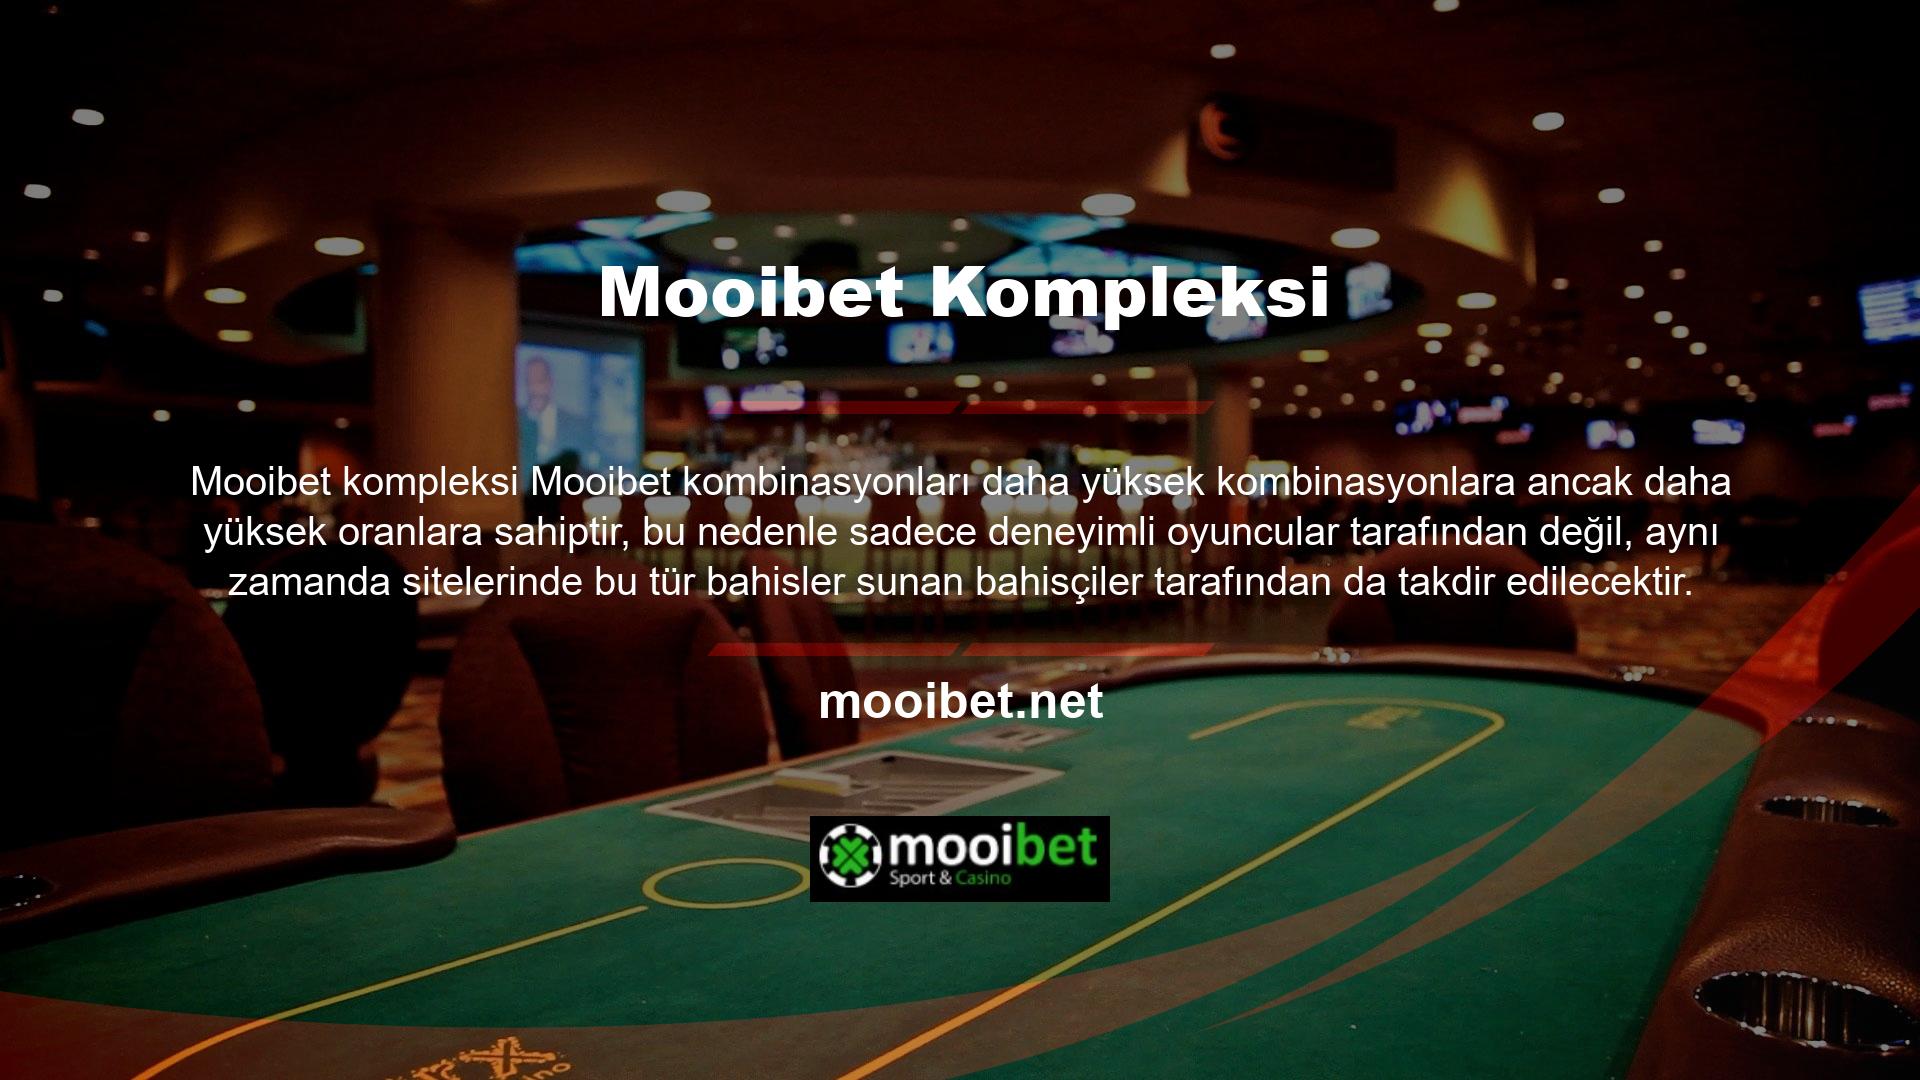 Mooibet, büyük bahisler yapabileceğiniz bir sitedir